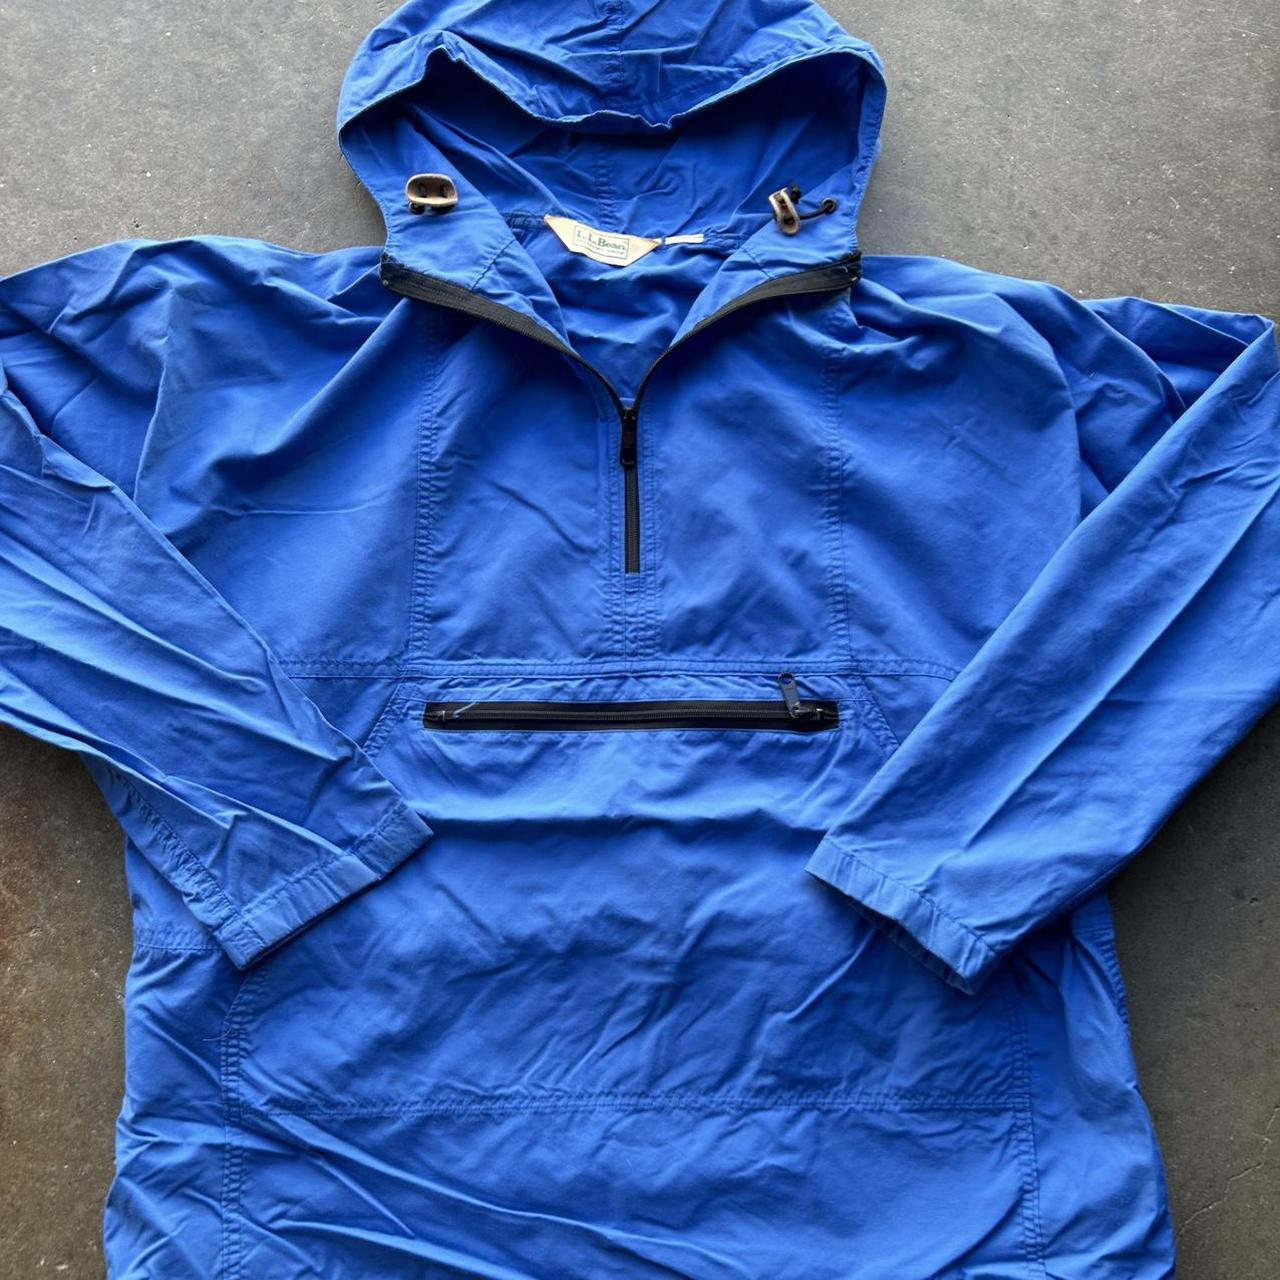 Vintage 90s LL Bean anorak jacket blue Size tag cut... - Depop